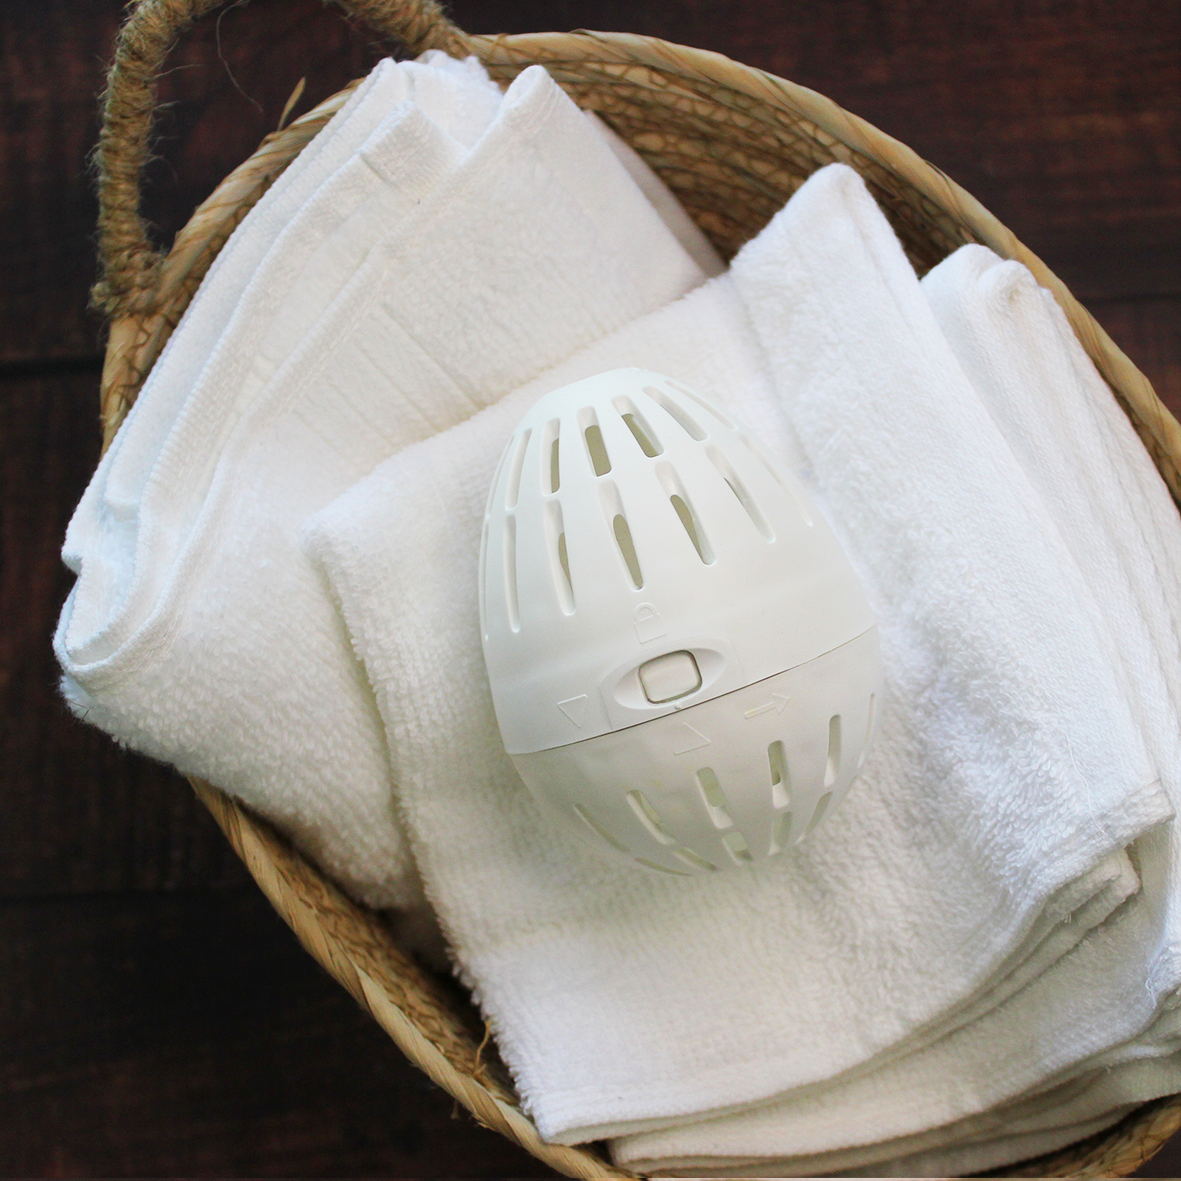 Ecoegg Laundry Egg Starter Kit White+Light-The Living Co.